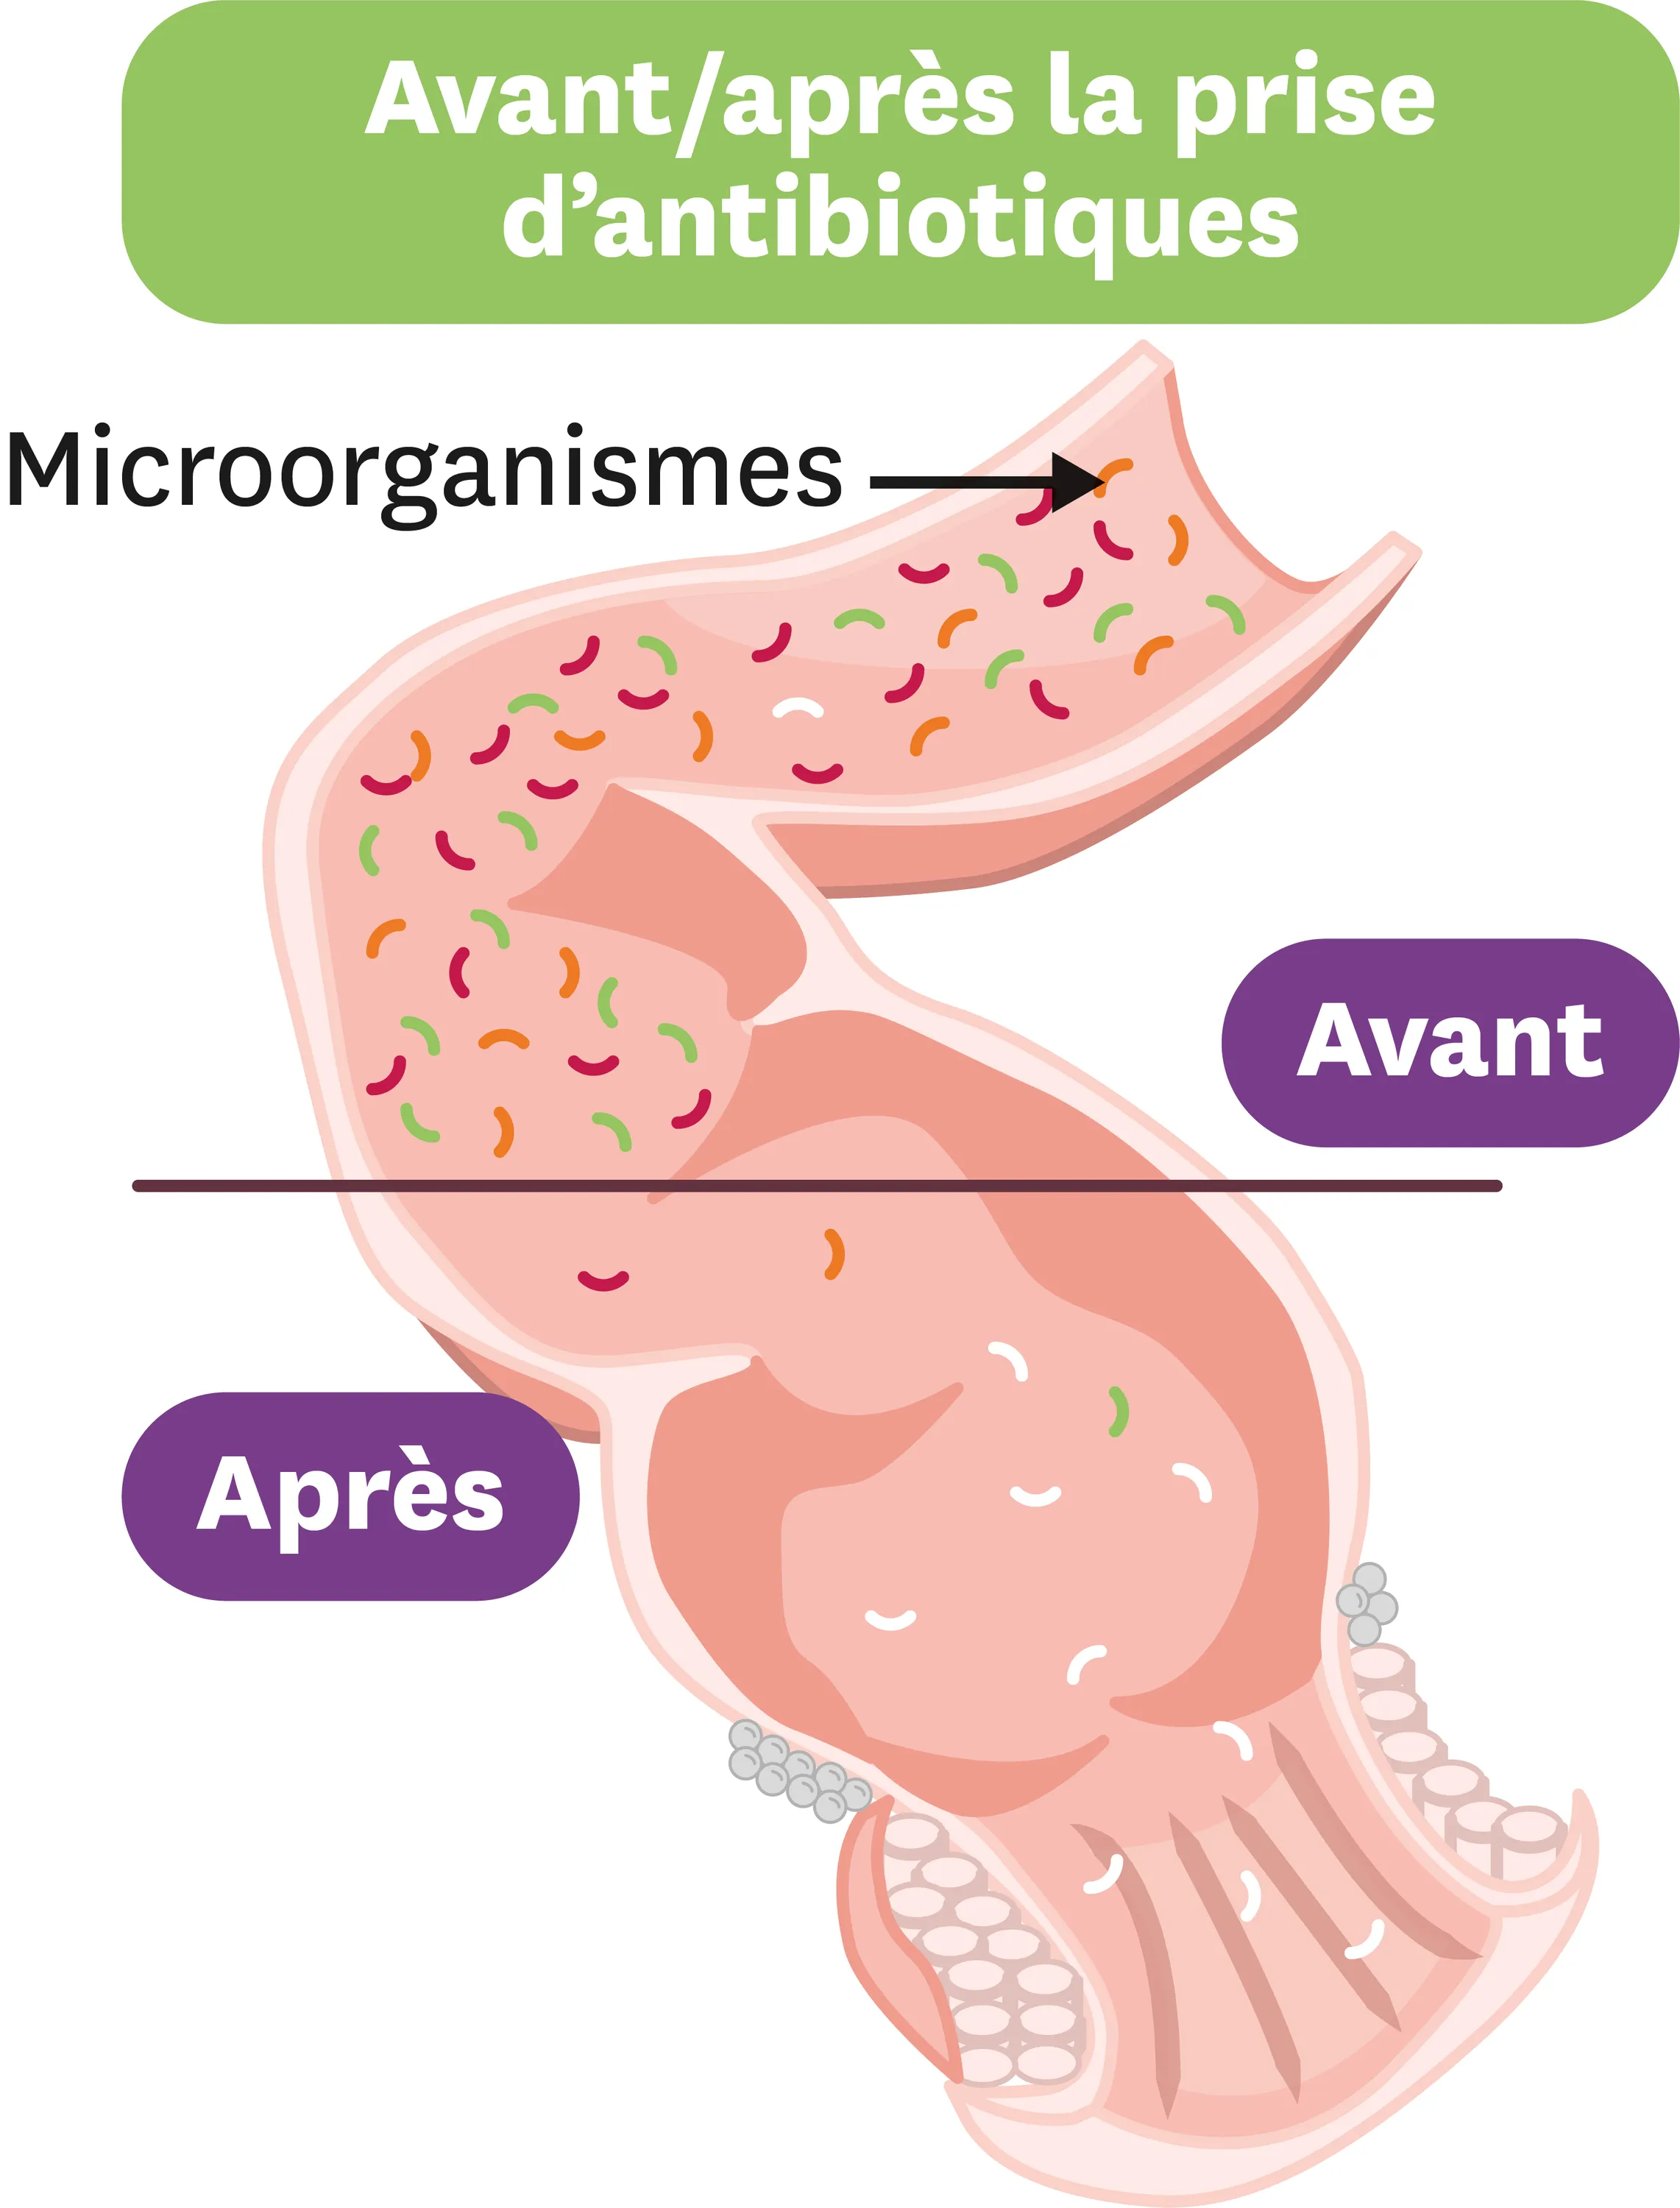 L'effet des antiobiotiques sur le microbiote intestinal.